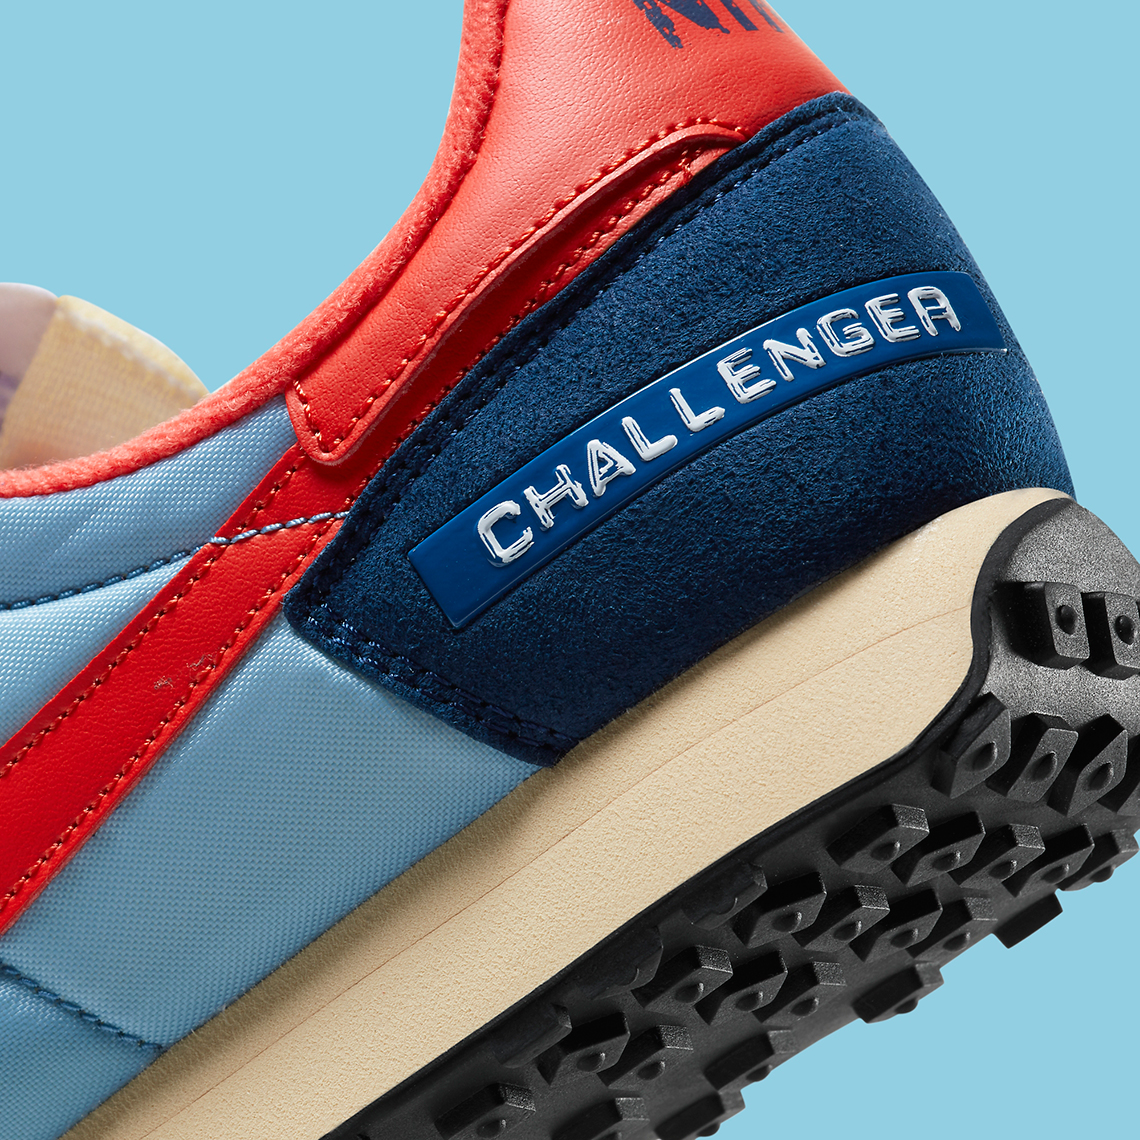 Nike Challenger Og Label Maker Blue Red Dc5214 422 8